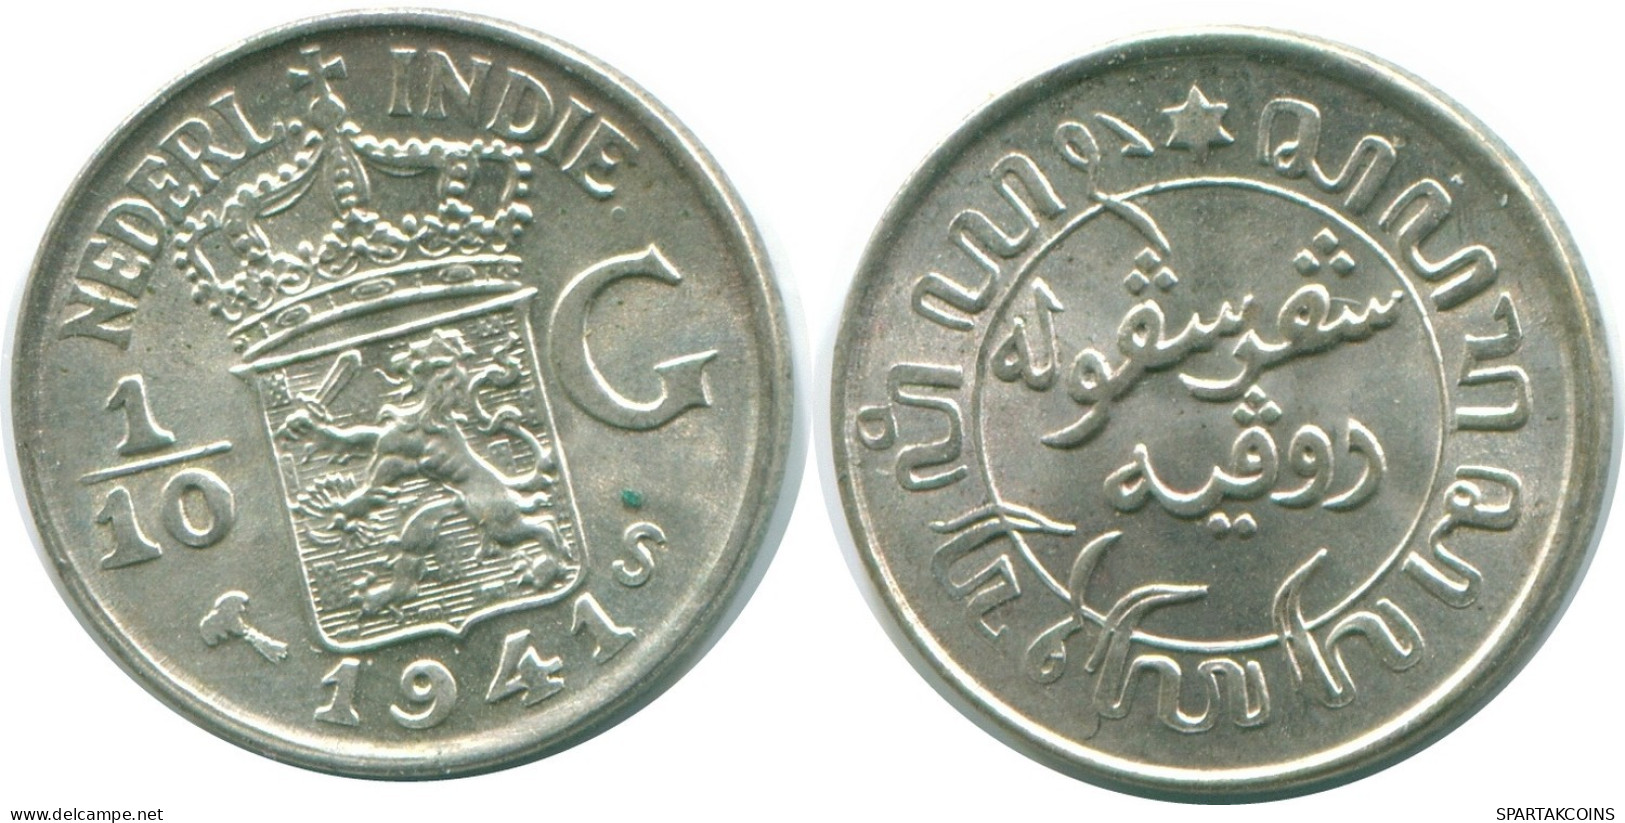 1/10 GULDEN 1941 S NIEDERLANDE OSTINDIEN SILBER Koloniale Münze #NL13568.3.D.A - Niederländisch-Indien